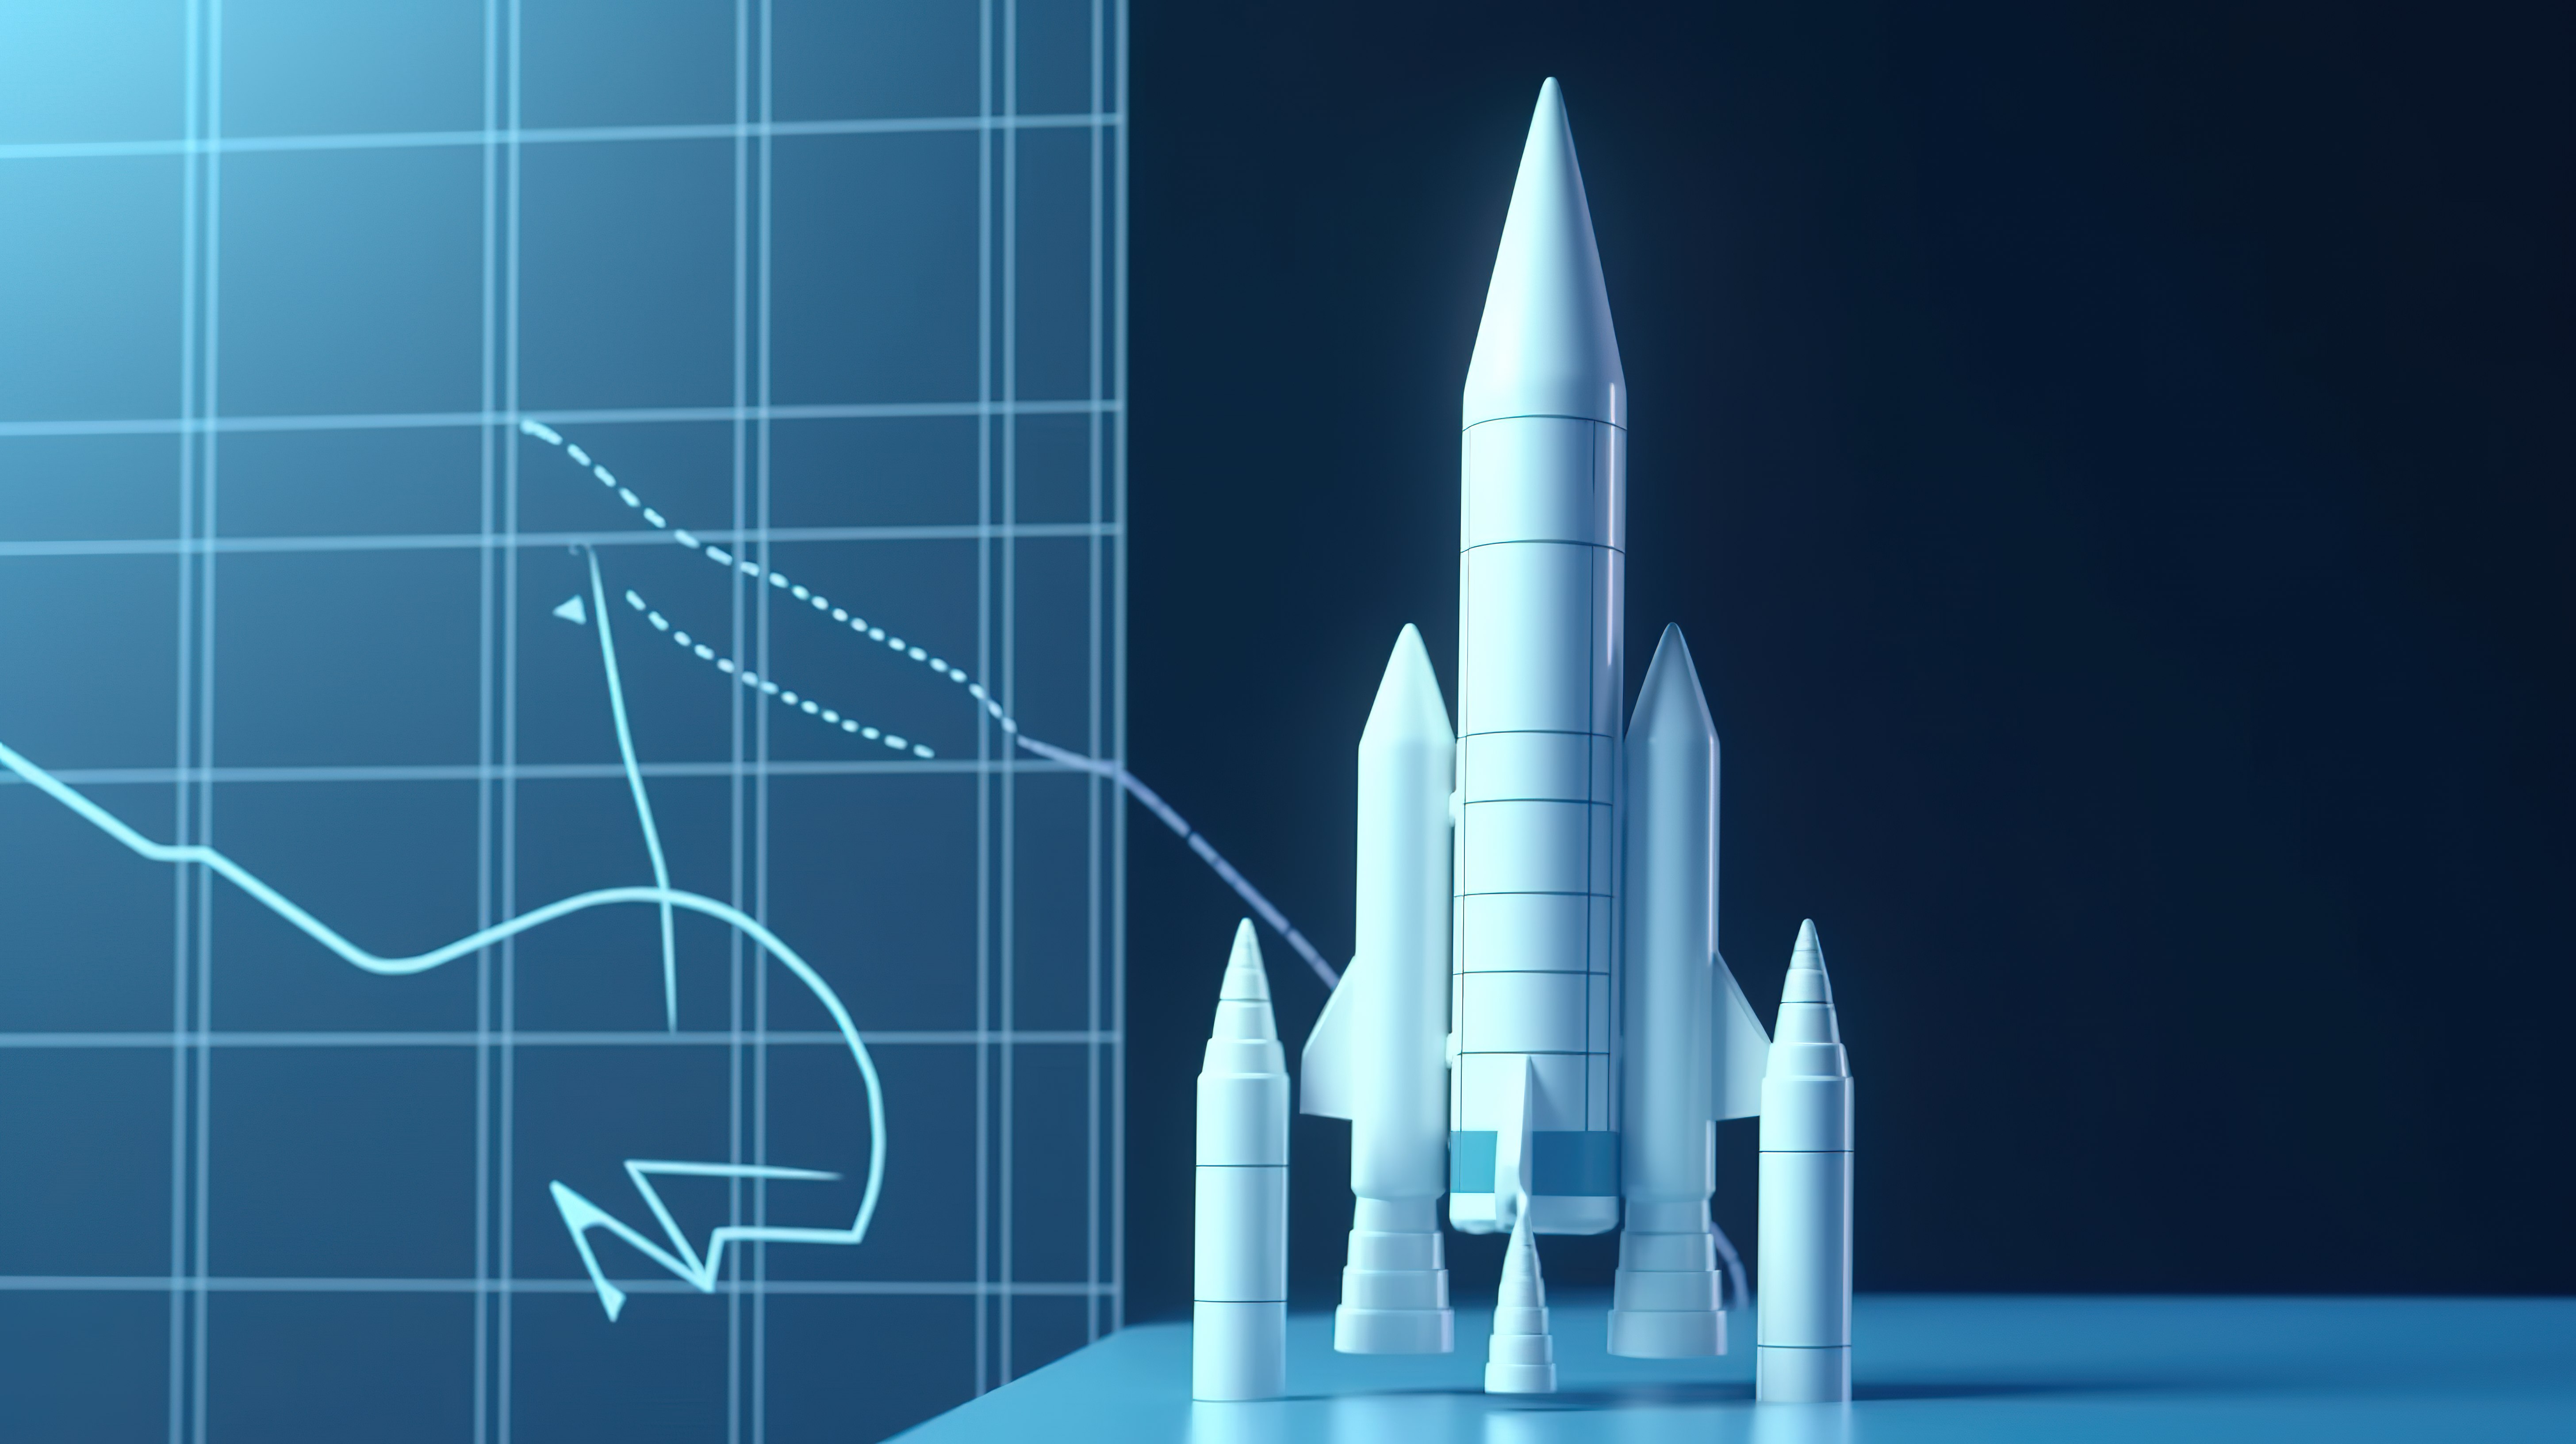 在初创公司展示的商业投资图表的蓝色背景下发射白色火箭的 3D 渲染图片